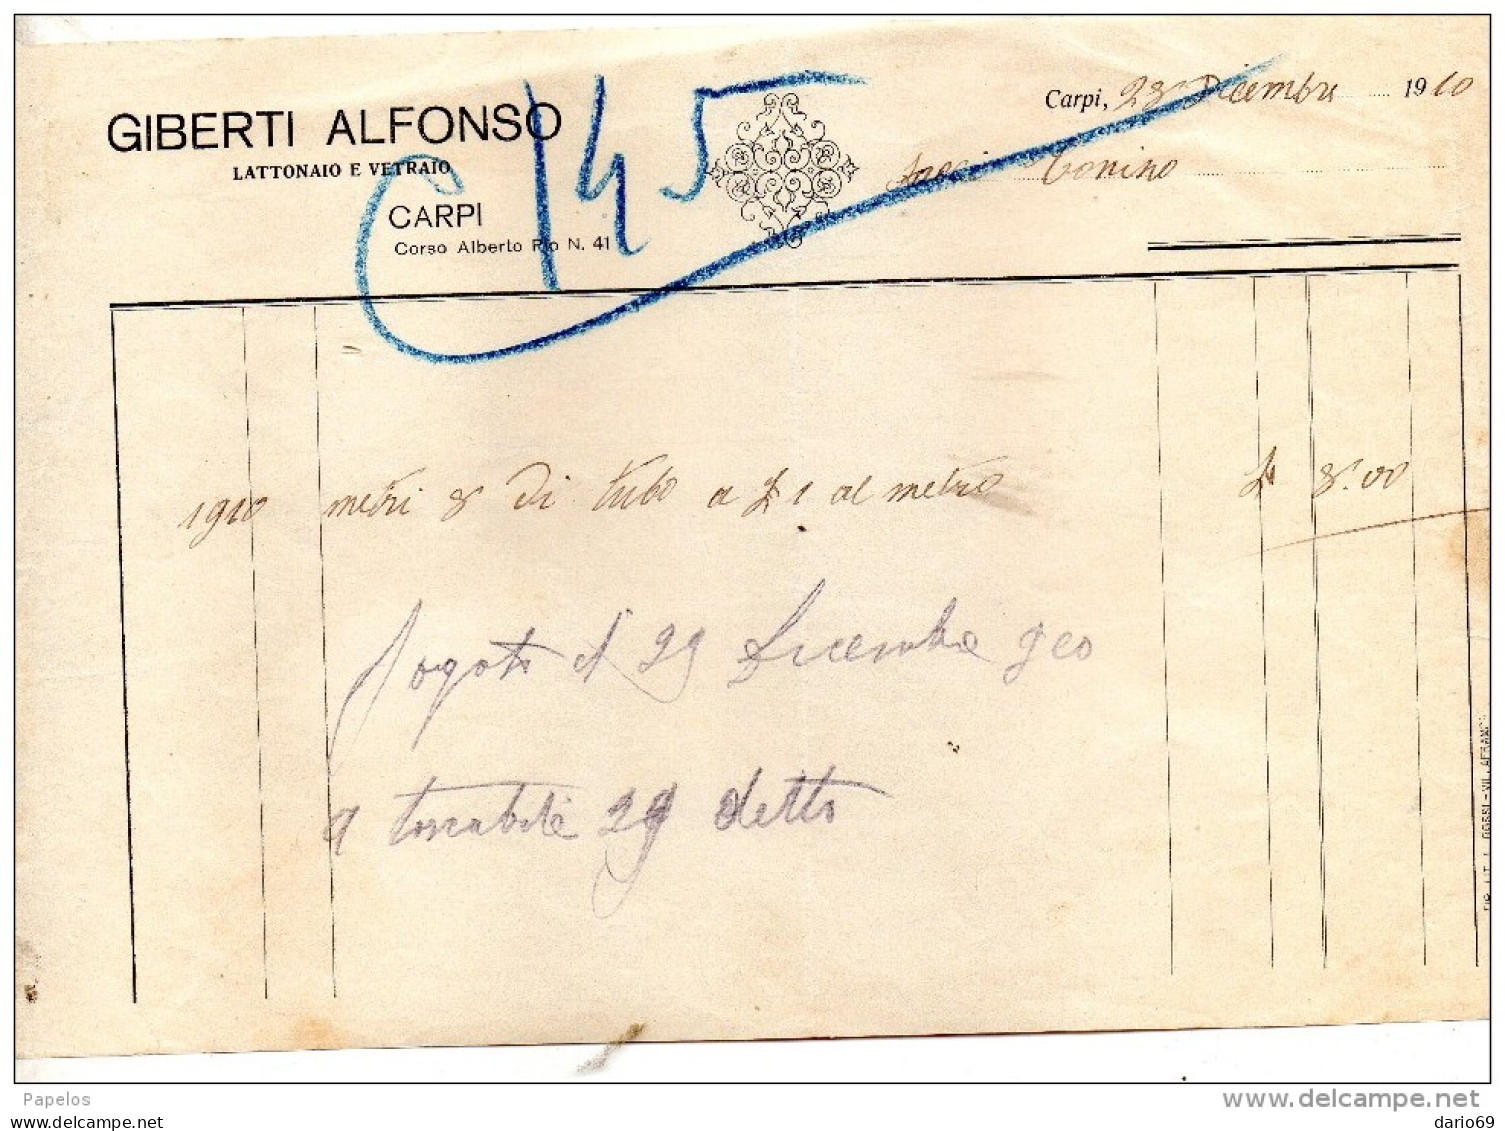 1910 CARPI - GIBERTI ALFONSO LATTONAIO E VETRAIO - Italy